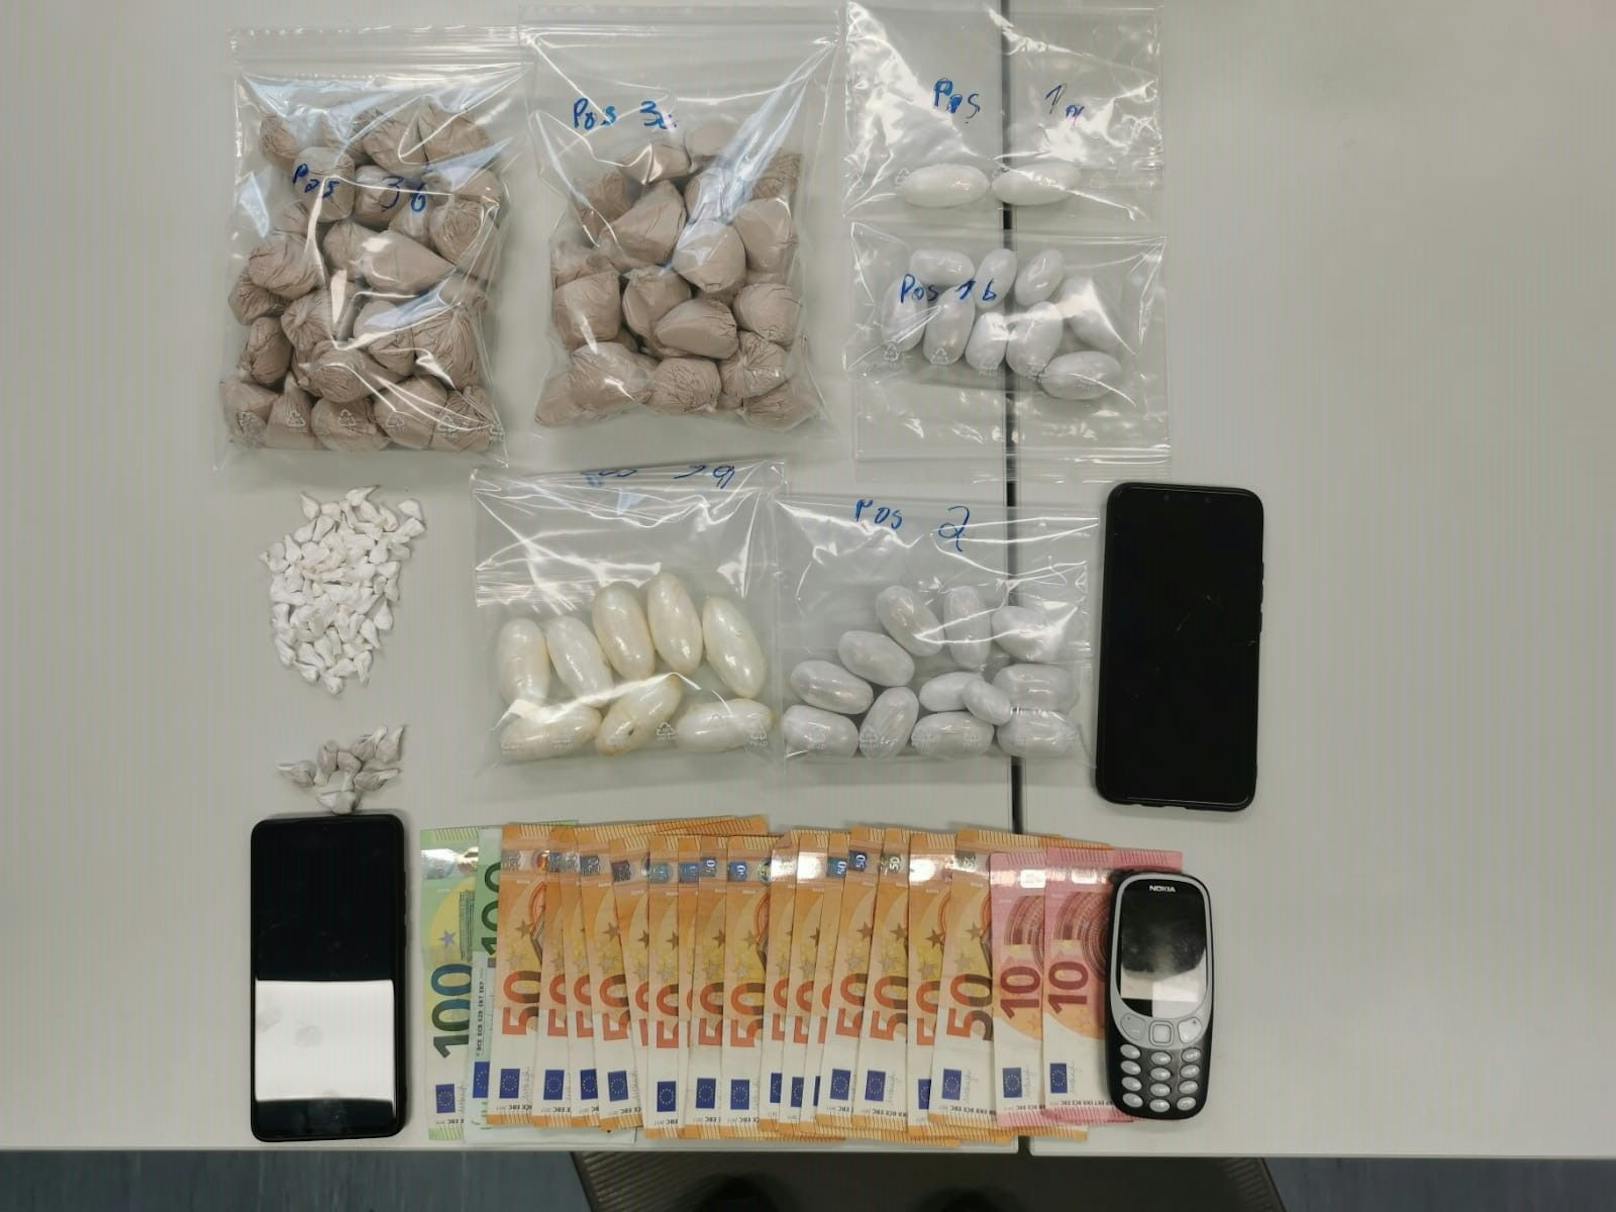 In der Wohnung wurden rund 830 Gramm Heroin und 170 Gramm Kokain entdeckt.